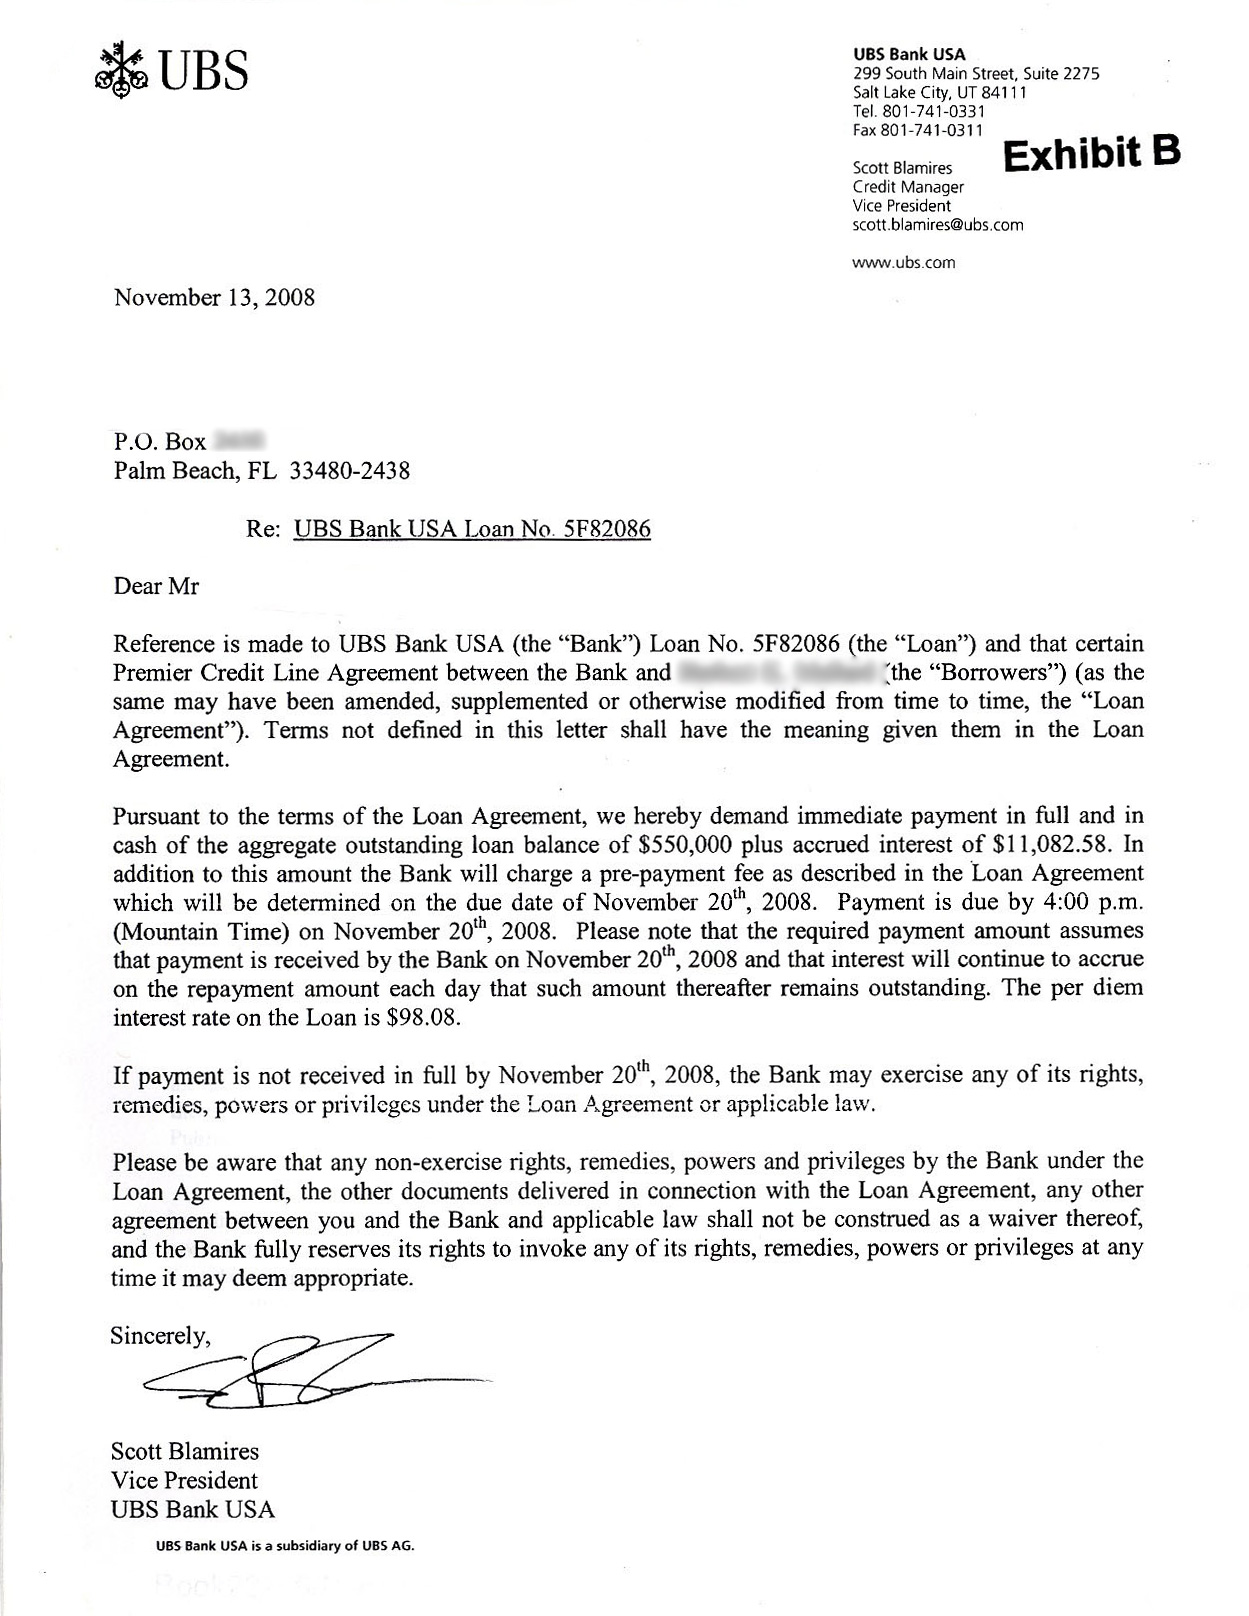 UBS demand letter